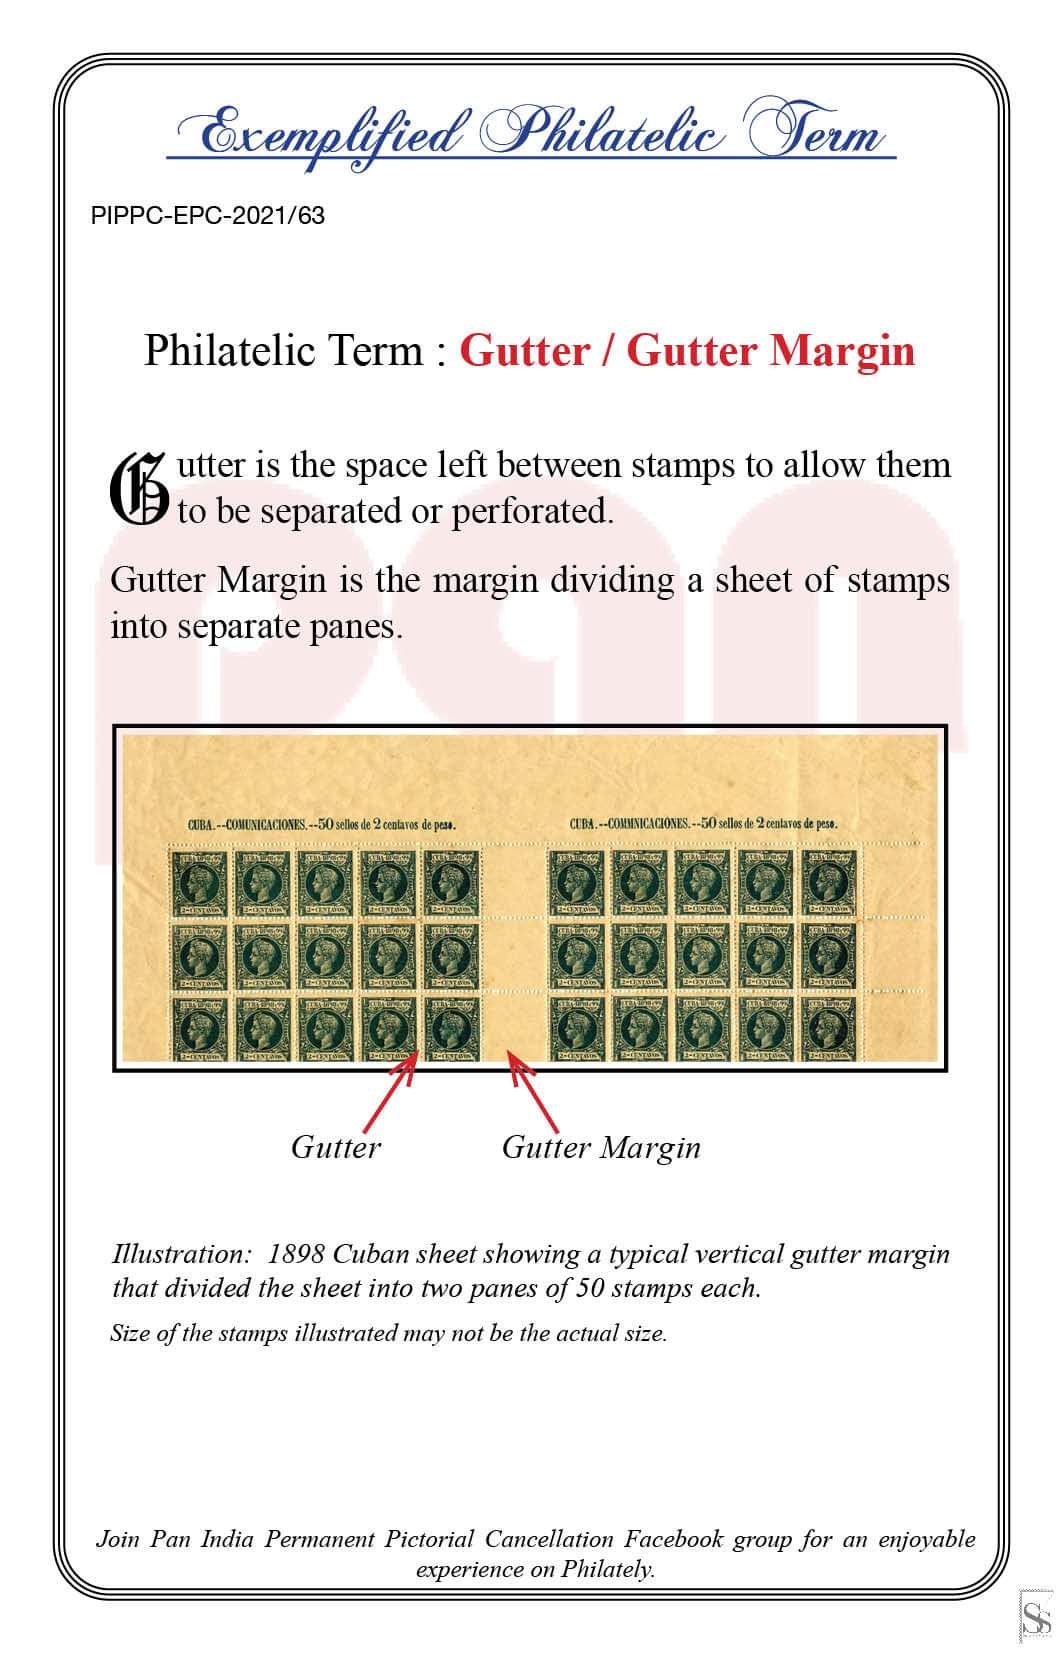 63. Today's Exemplified Philatelic term- Gutter/ Gutter Margin